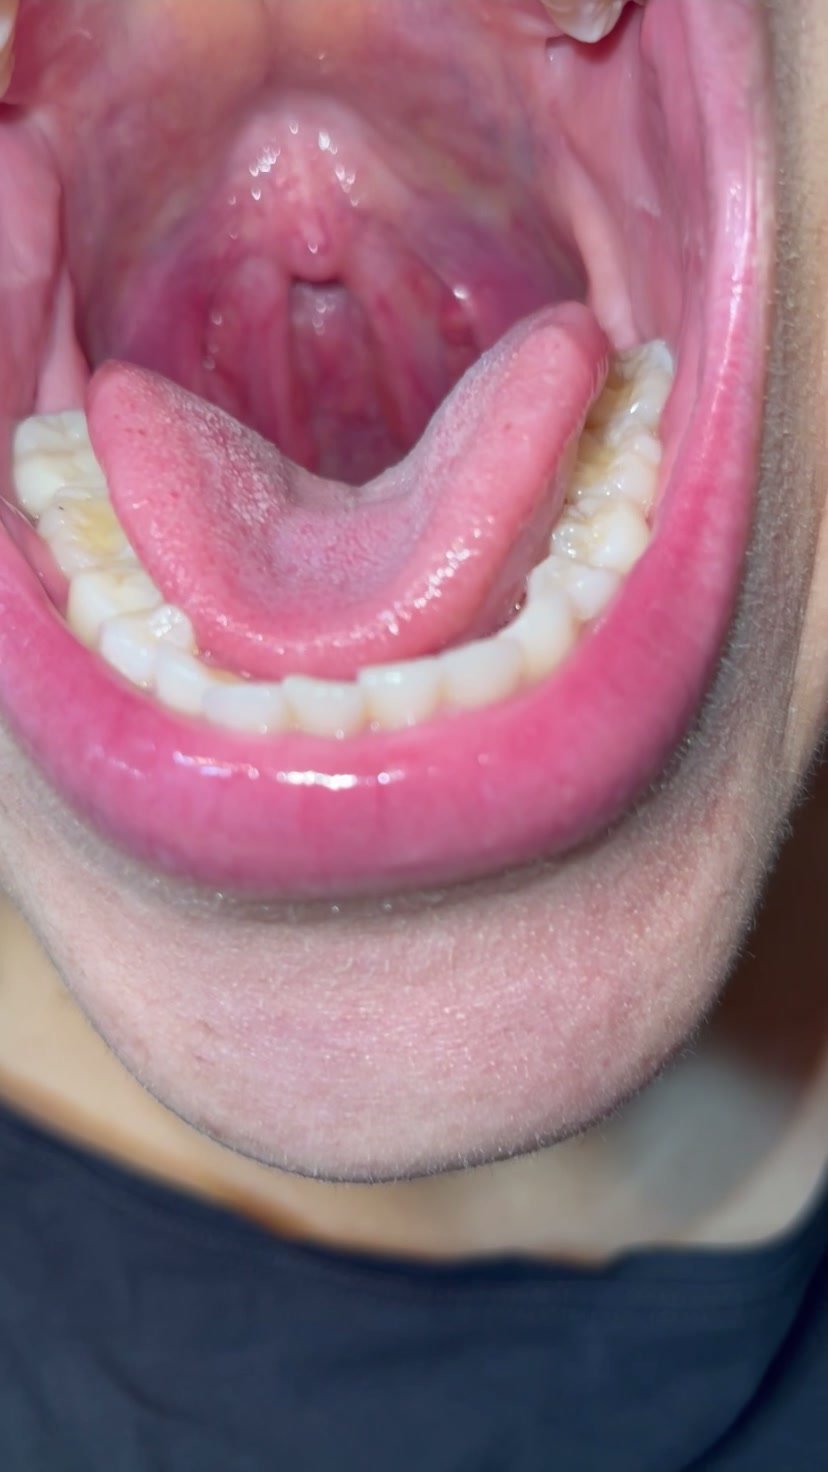 Beautiful mouth